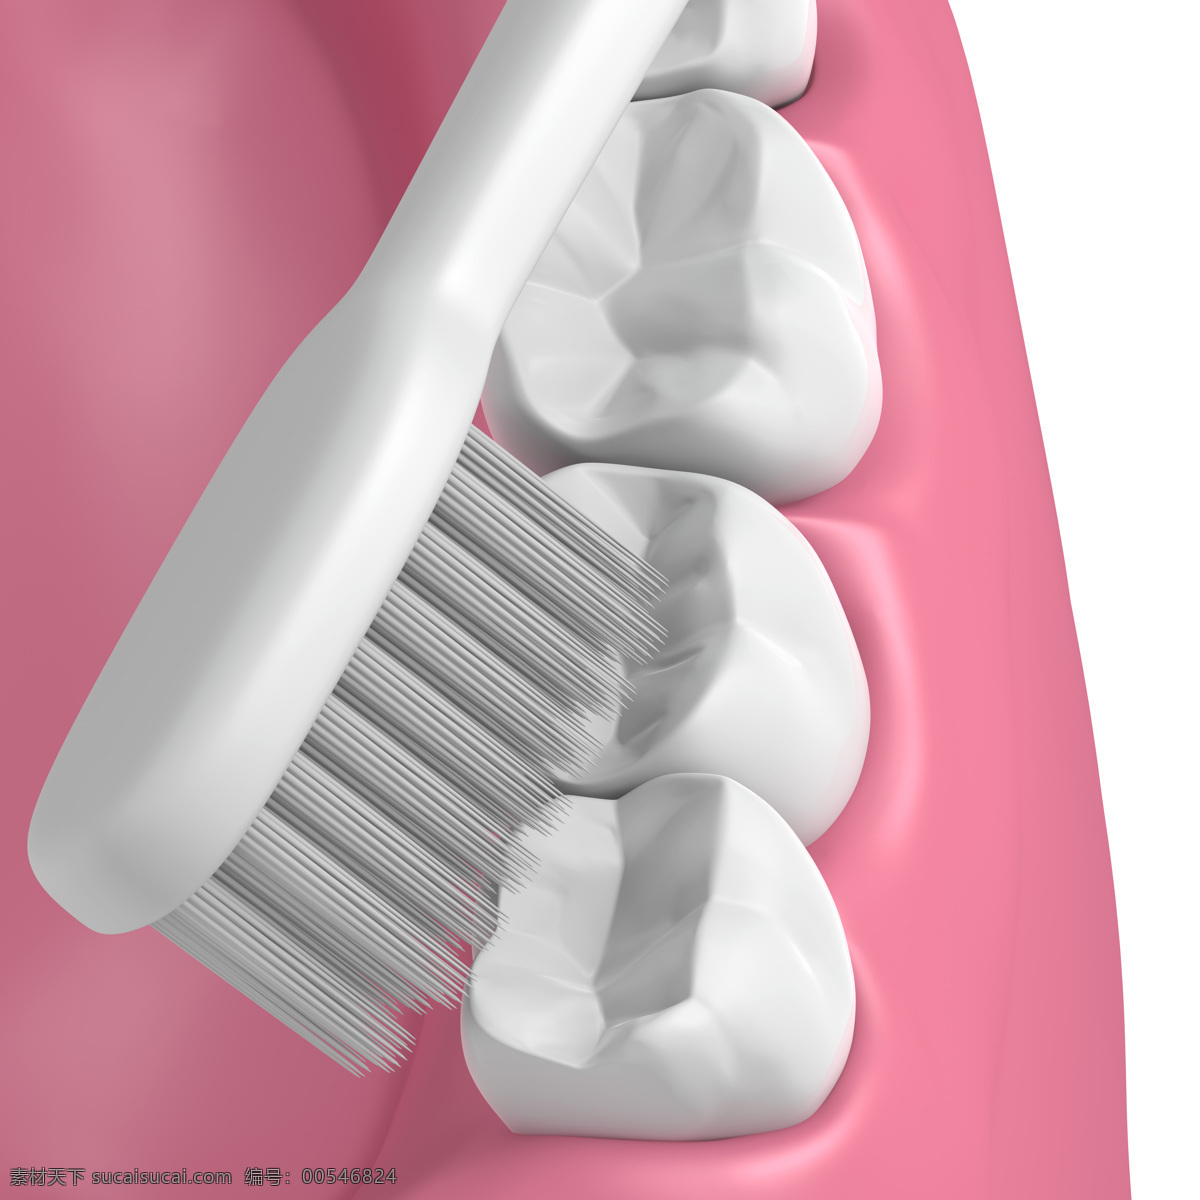 刷牙 假牙 白牙 牙齿 保护牙齿 洁白牙齿 健康牙齿 口腔护理 3d设计 3d作品